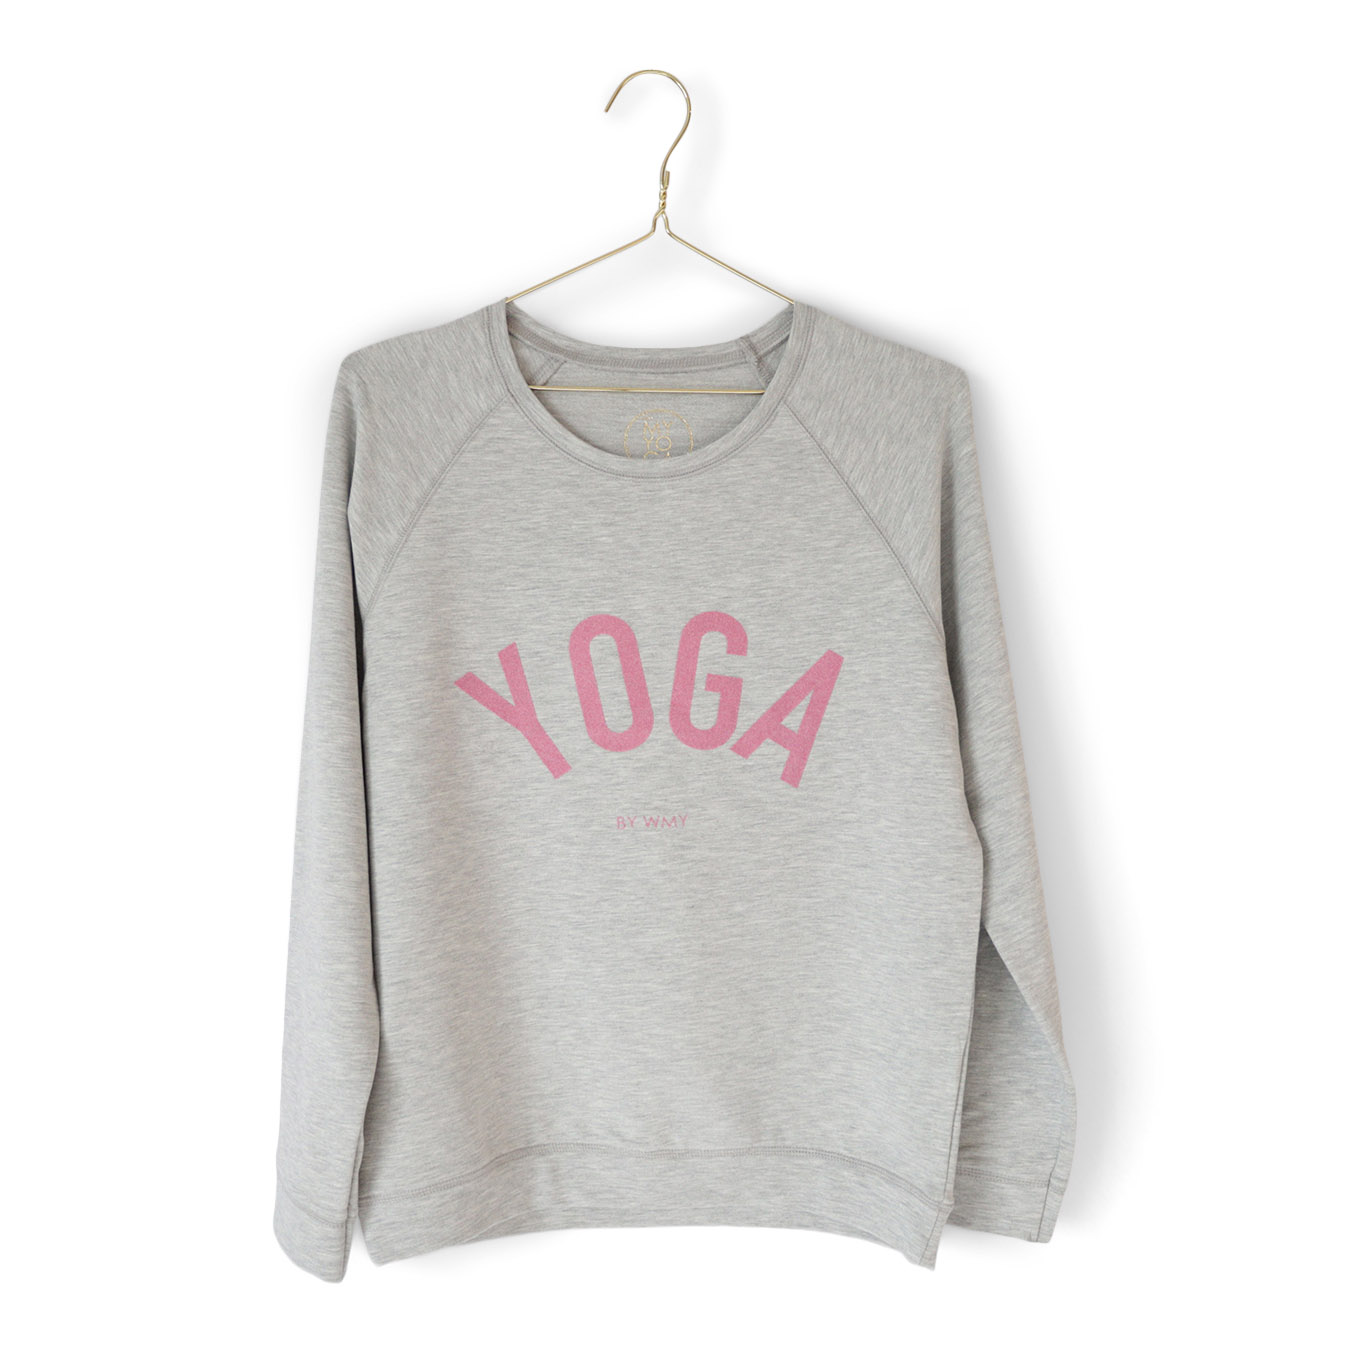 Grå tröja med YOGA tryck i rosa.